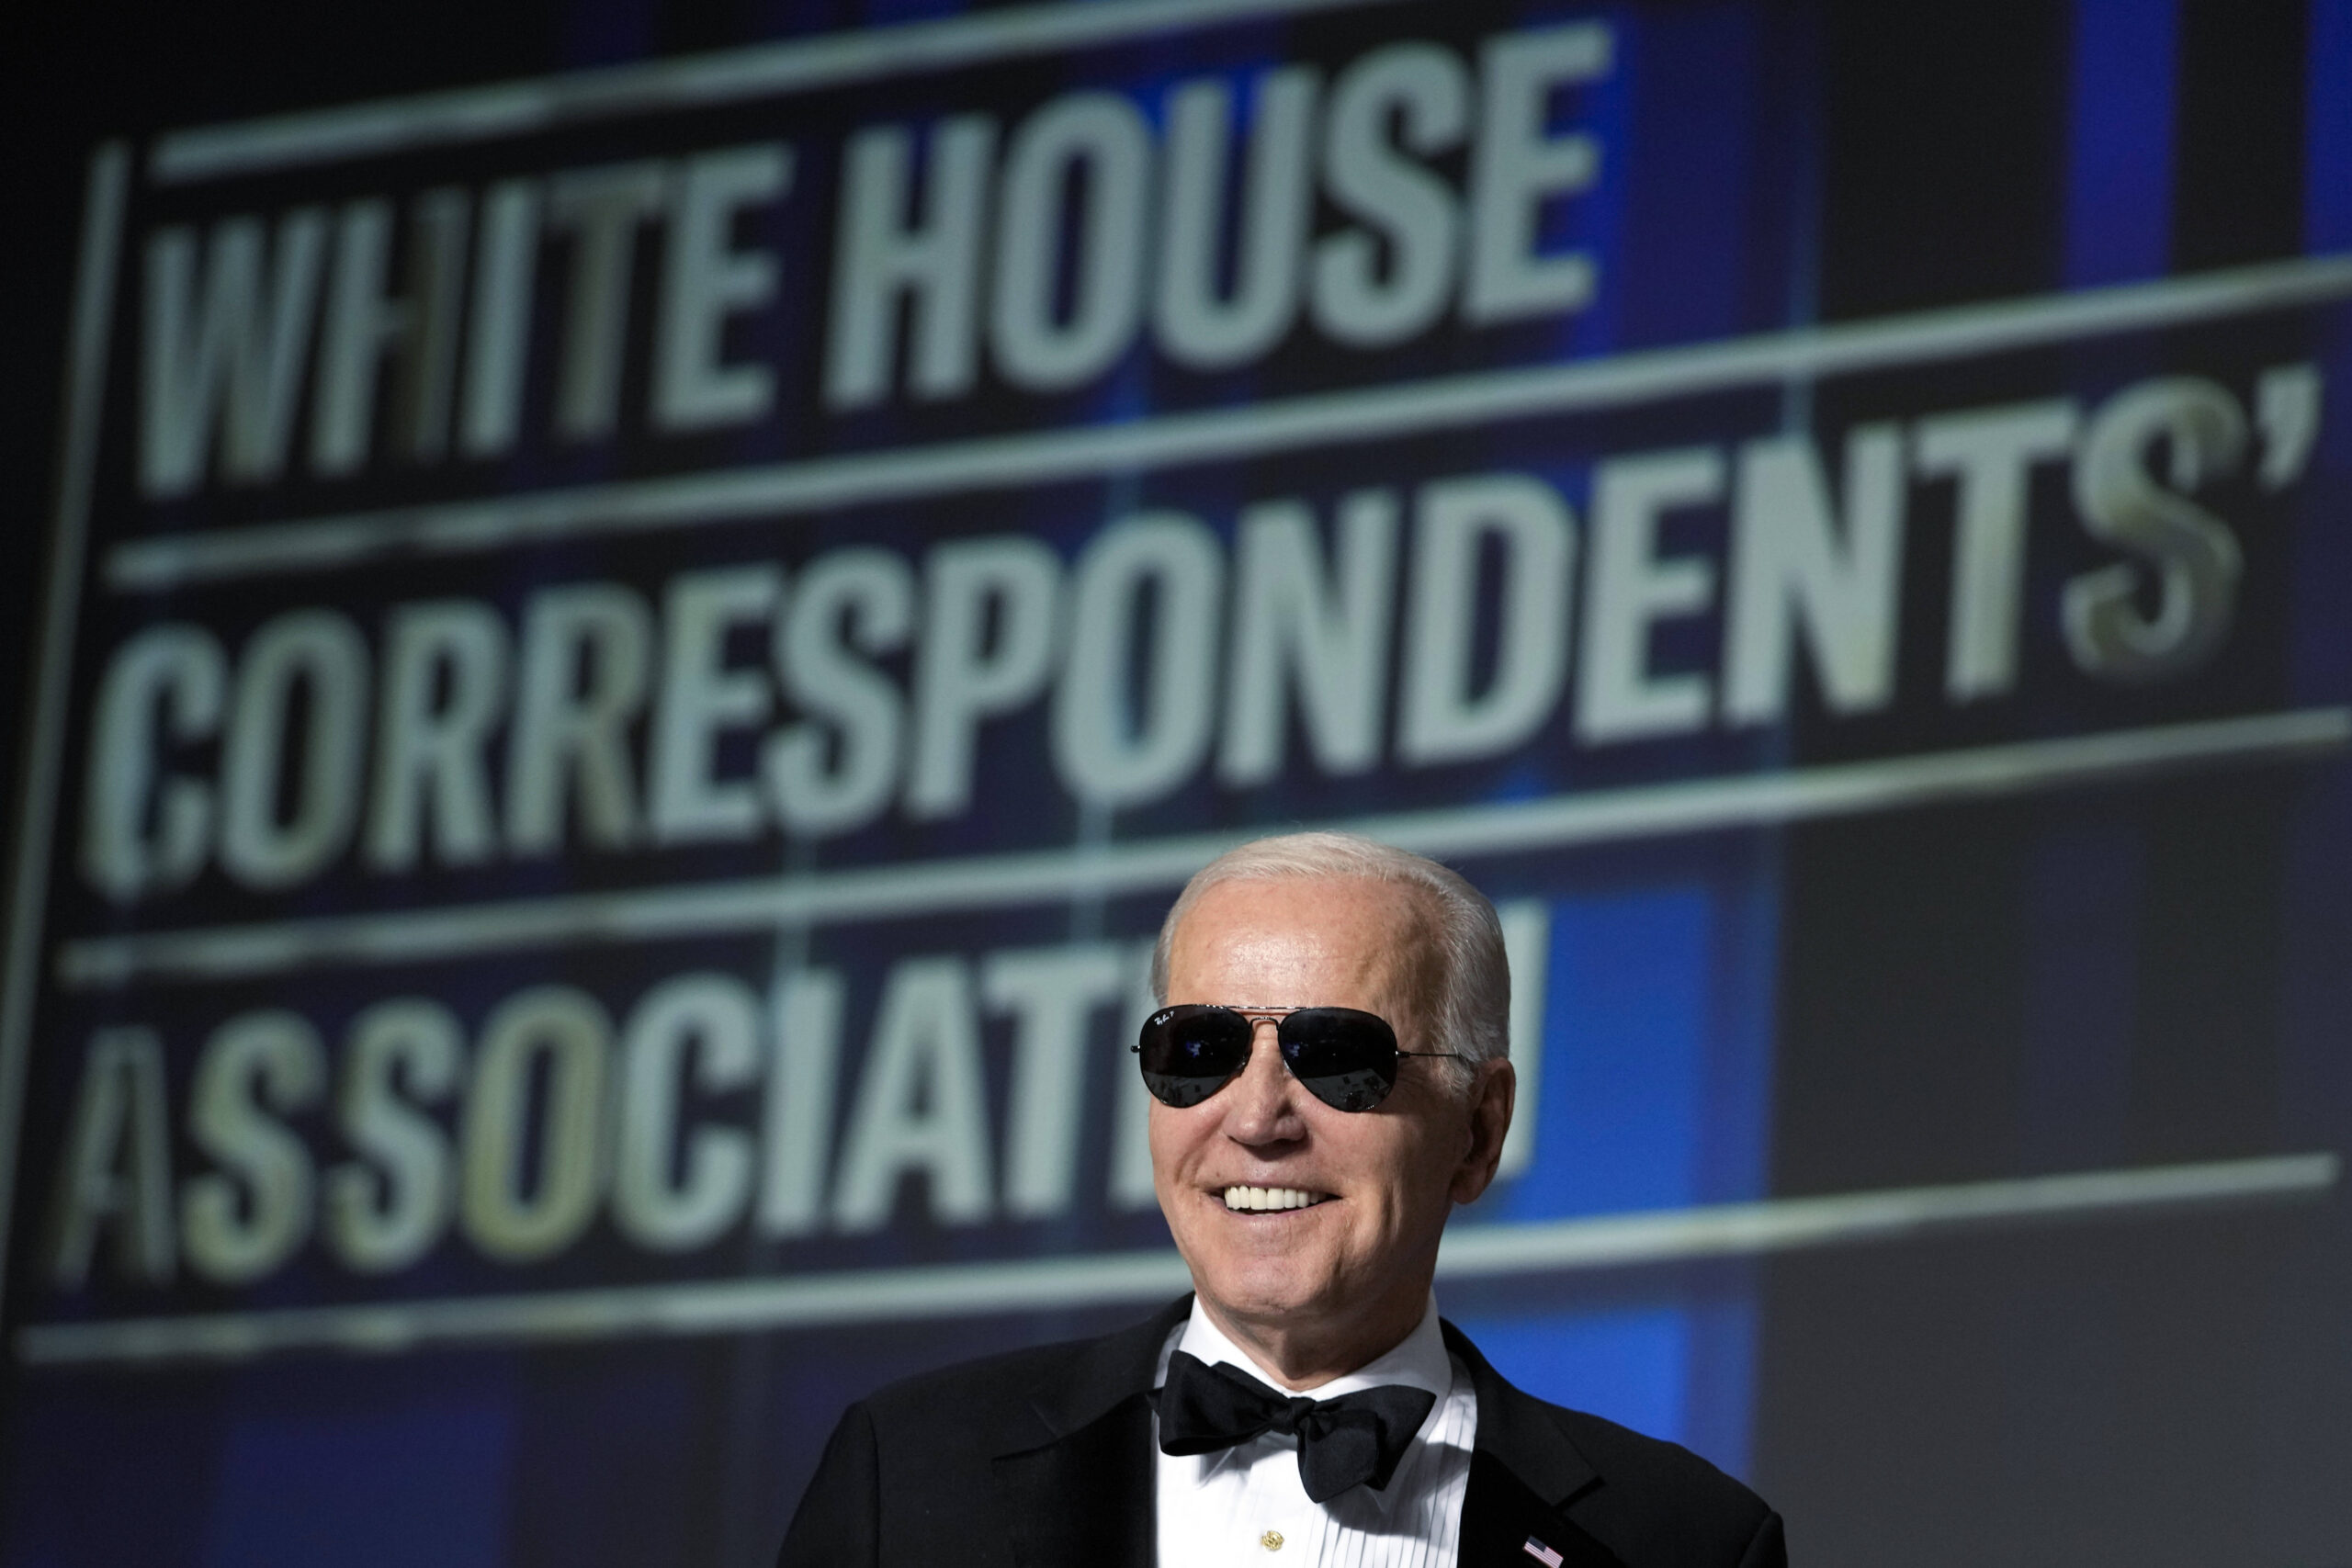 Le président Joe Biden enfile des lunettes de soleil après avoir fait une blague sur le fait de devenir le personnage de 